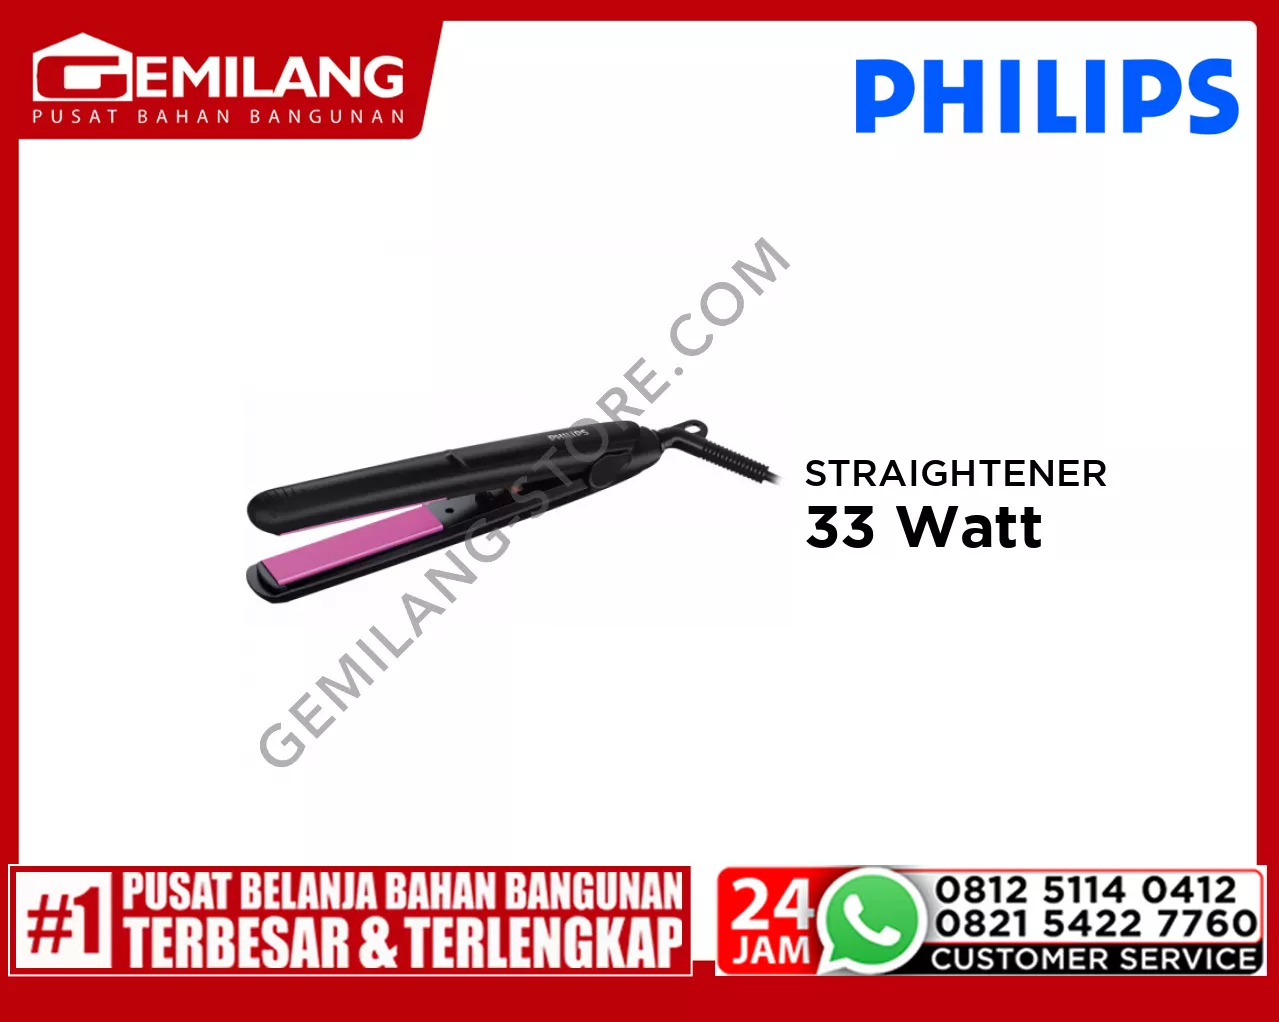 PHILIPS STRAIGHTENER HP-8401